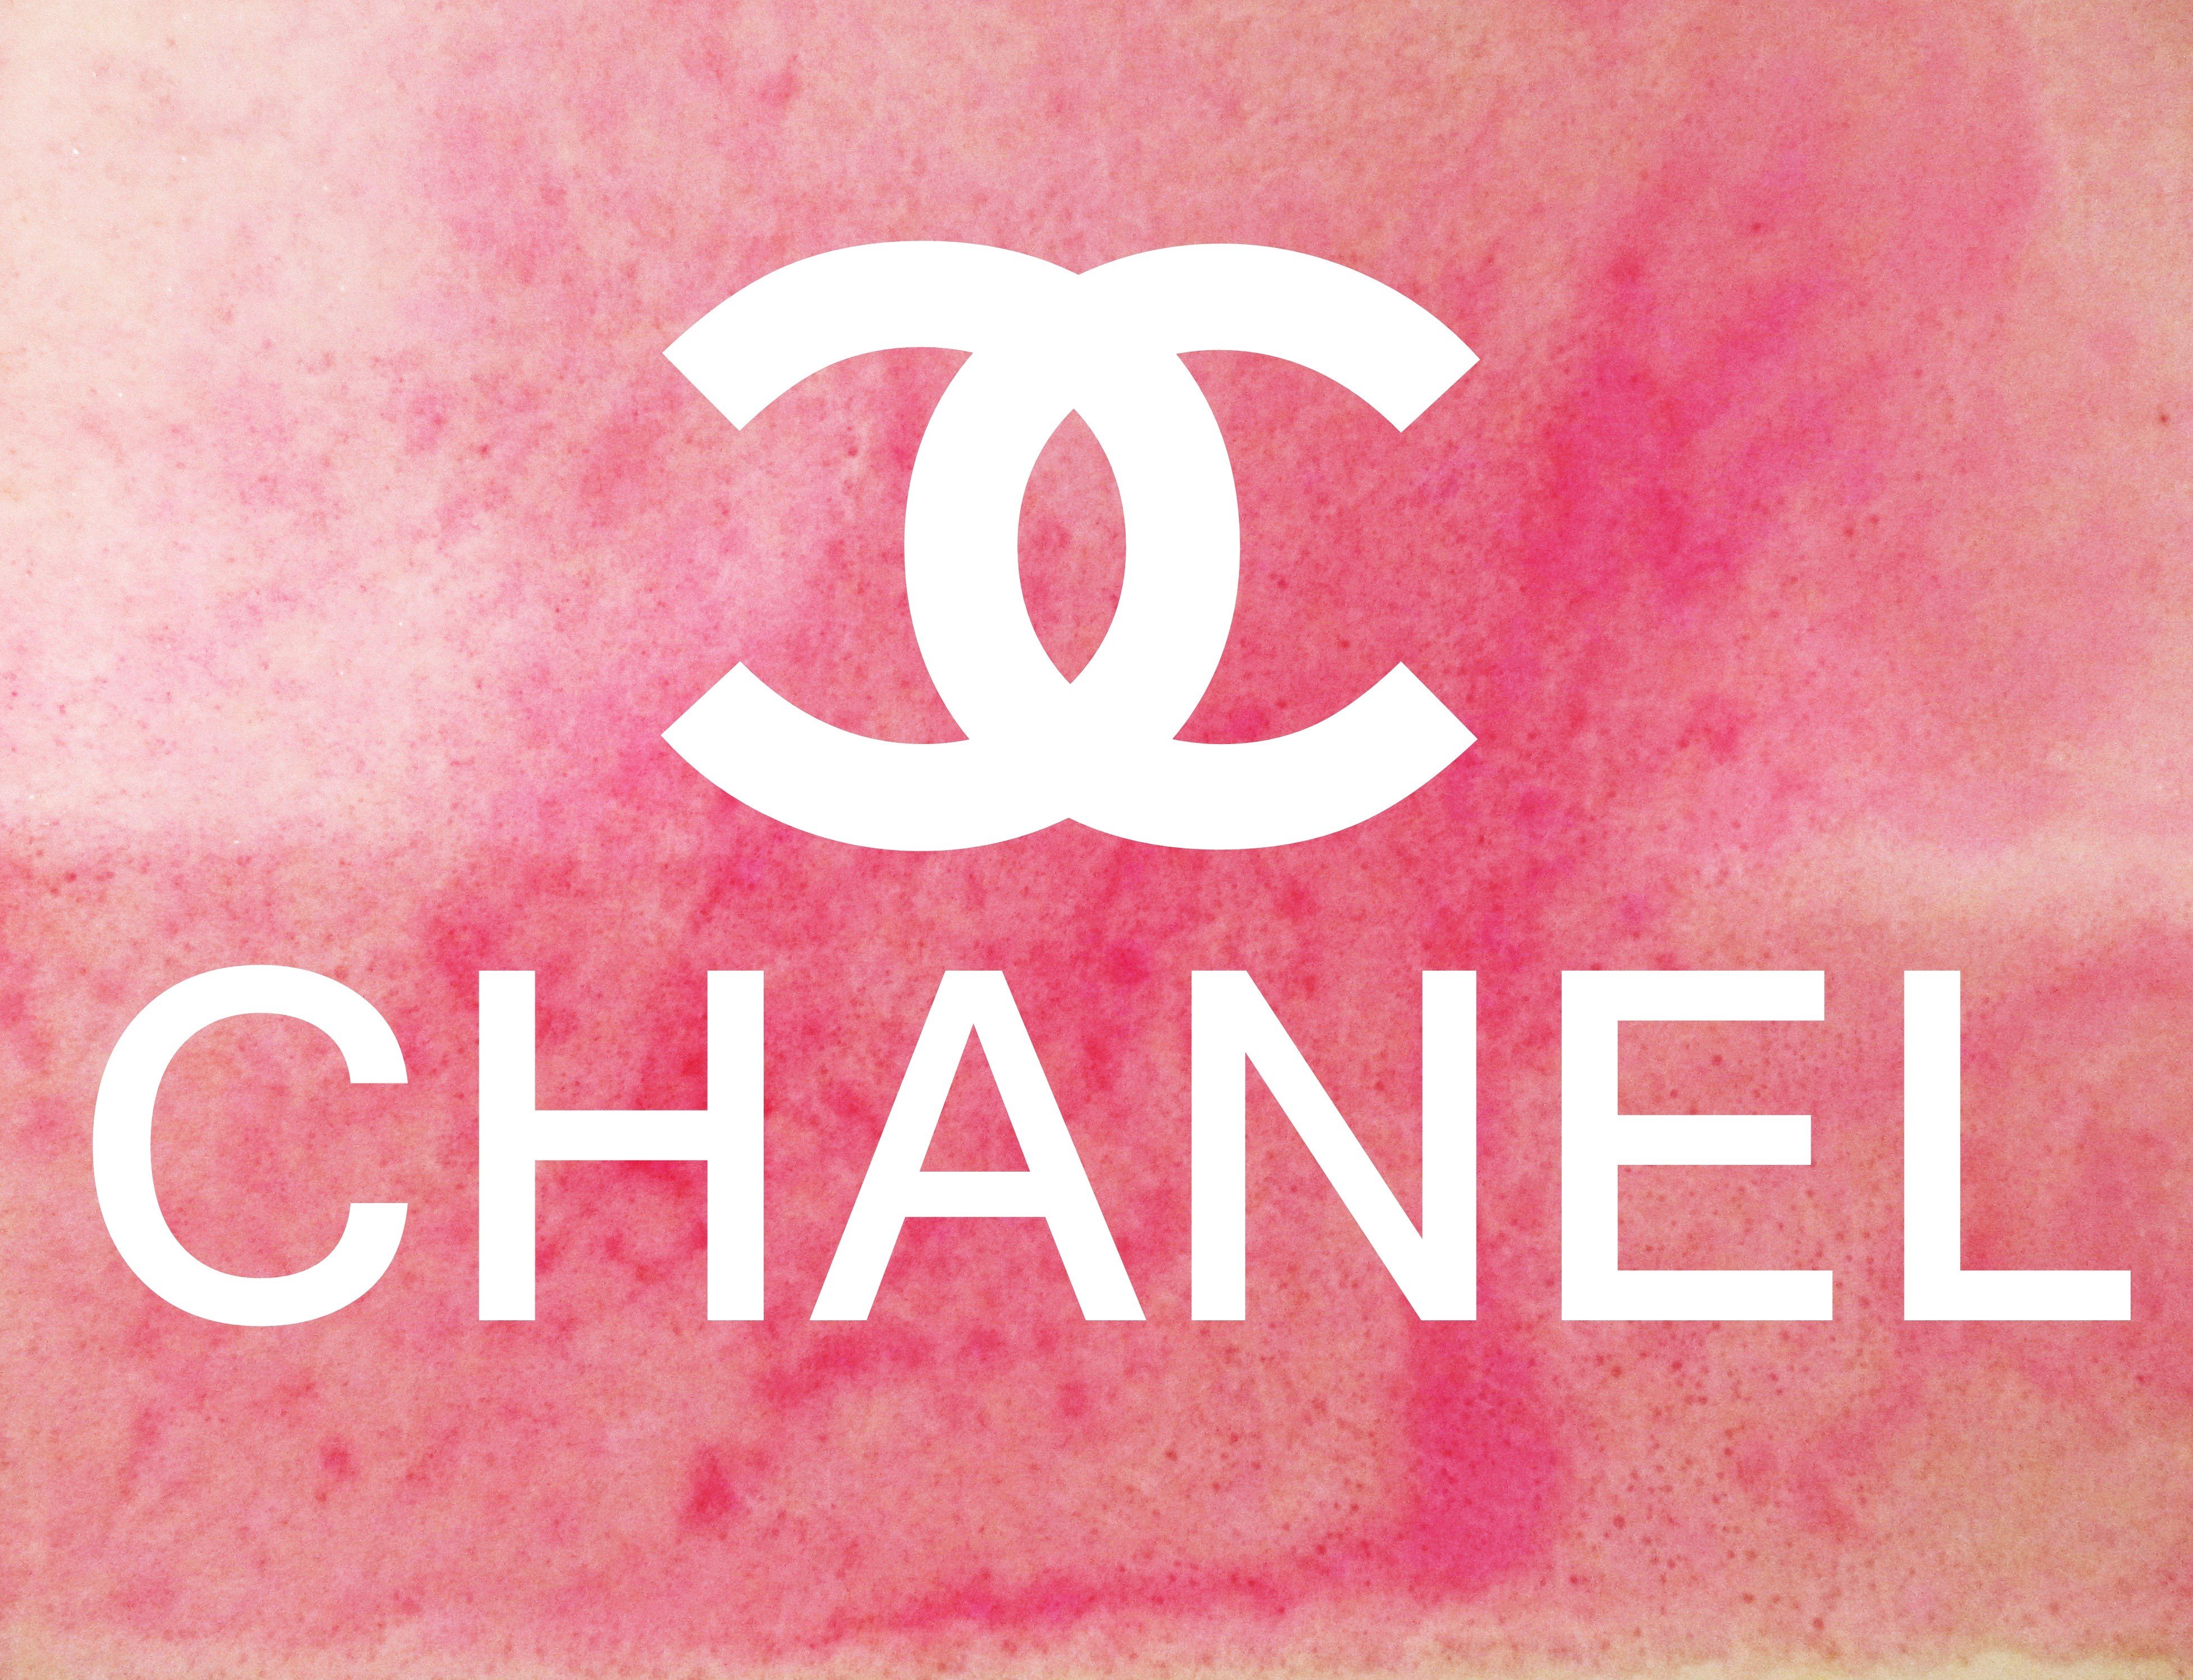 Chanel luôn là một trong những thương hiệu hàng đầu của thế giới thời trang và nổi tiếng với những sản phẩm chất lượng cao và thiết kế độc đáo. Nếu bạn là một fan của Chanel, không thể bỏ qua ảnh liên quan đến thương hiệu này. Hãy nhấn vào ảnh để tìm hiểu thêm về những sản phẩm đình đám của Chanel.